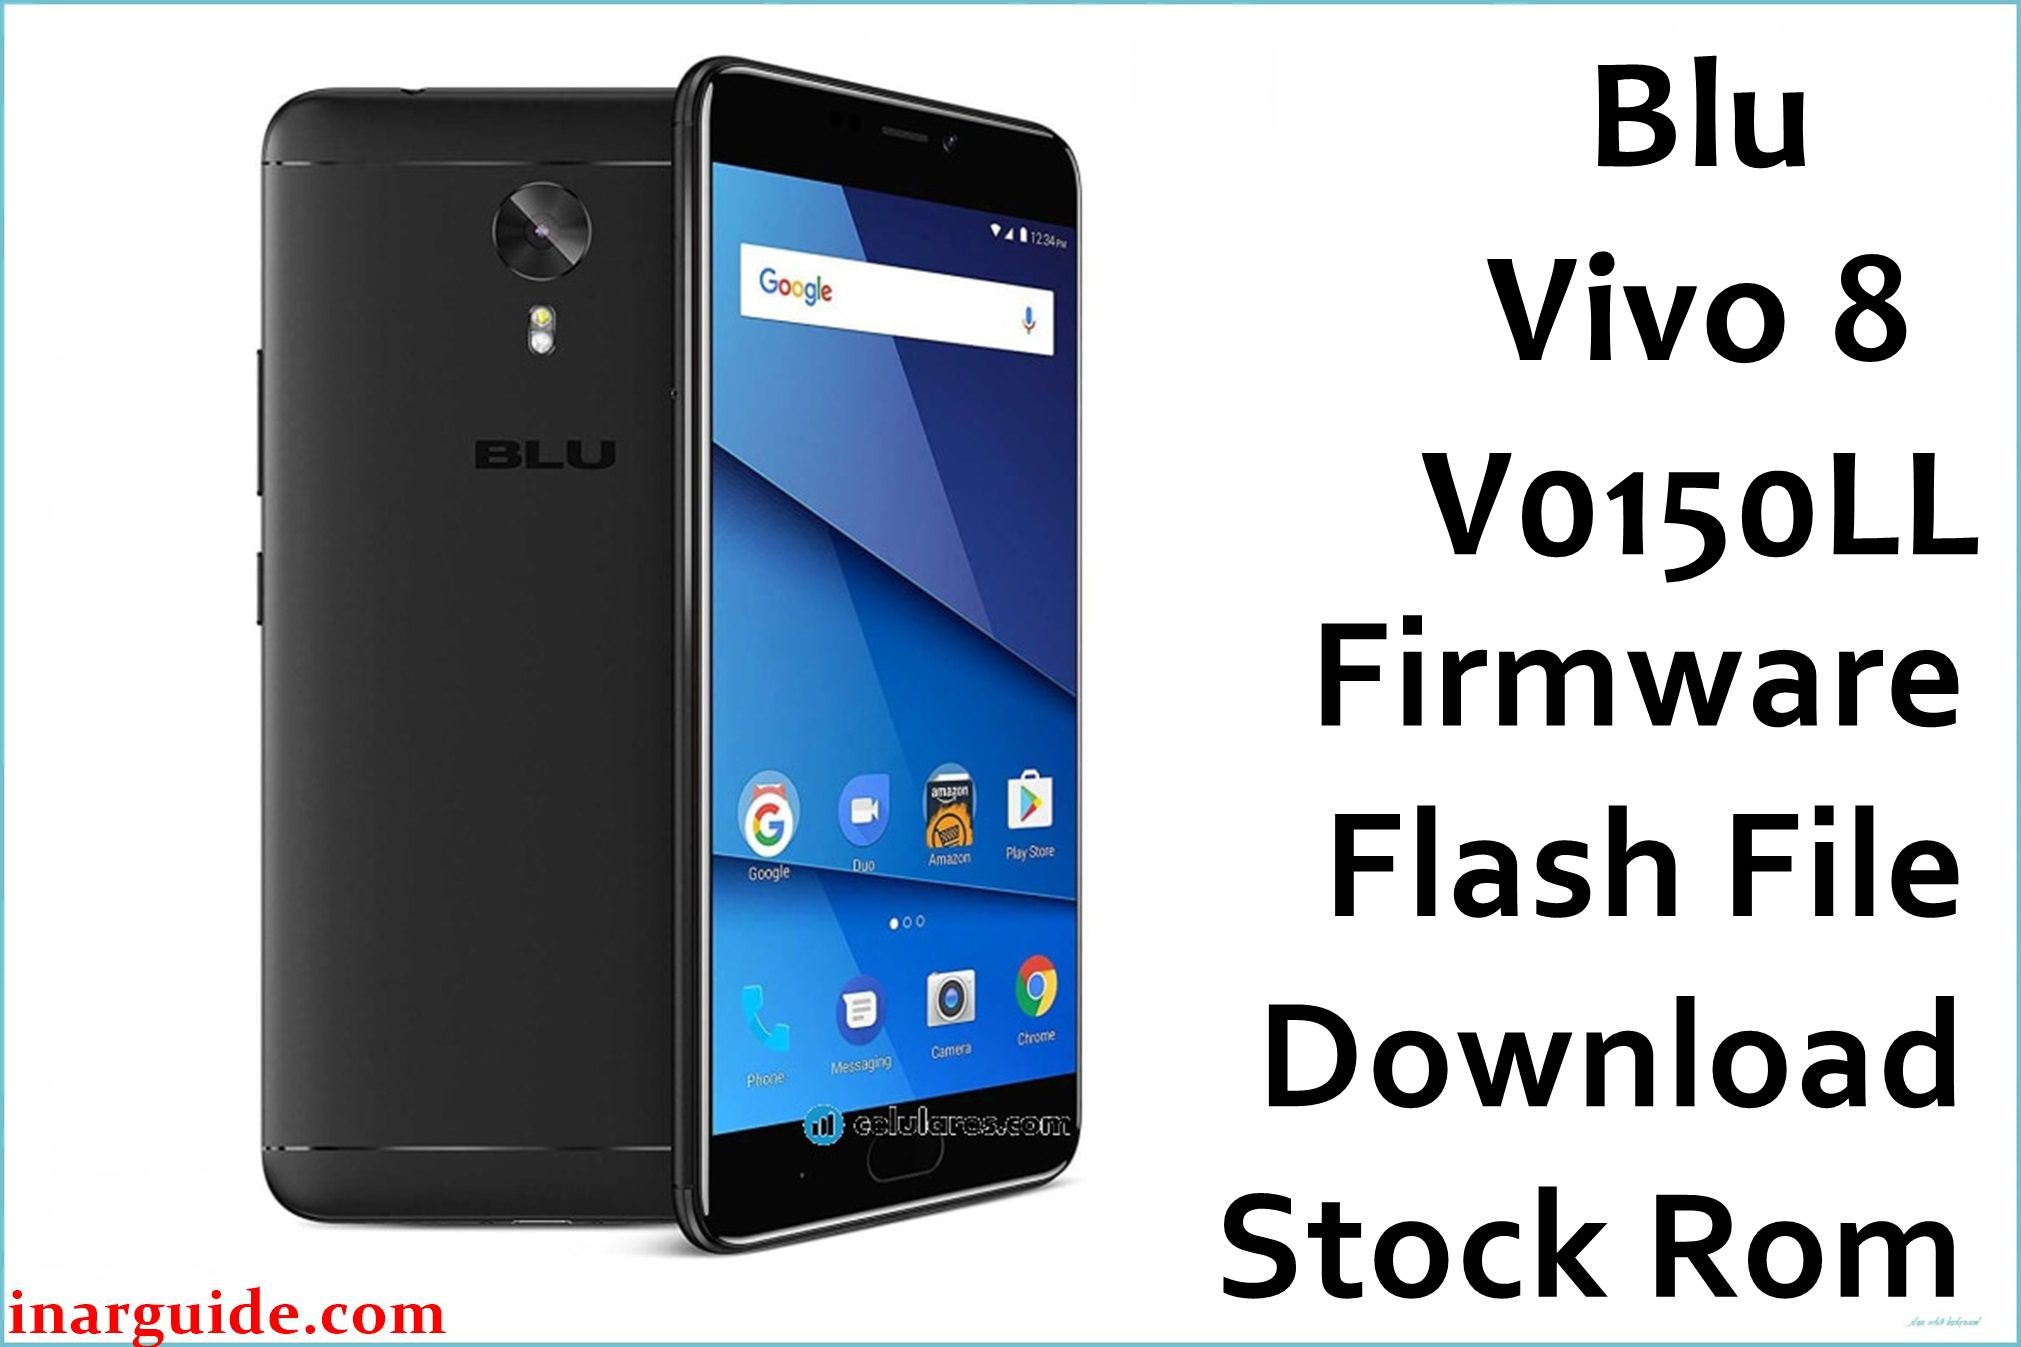 Blu Vivo 8 V0150LL